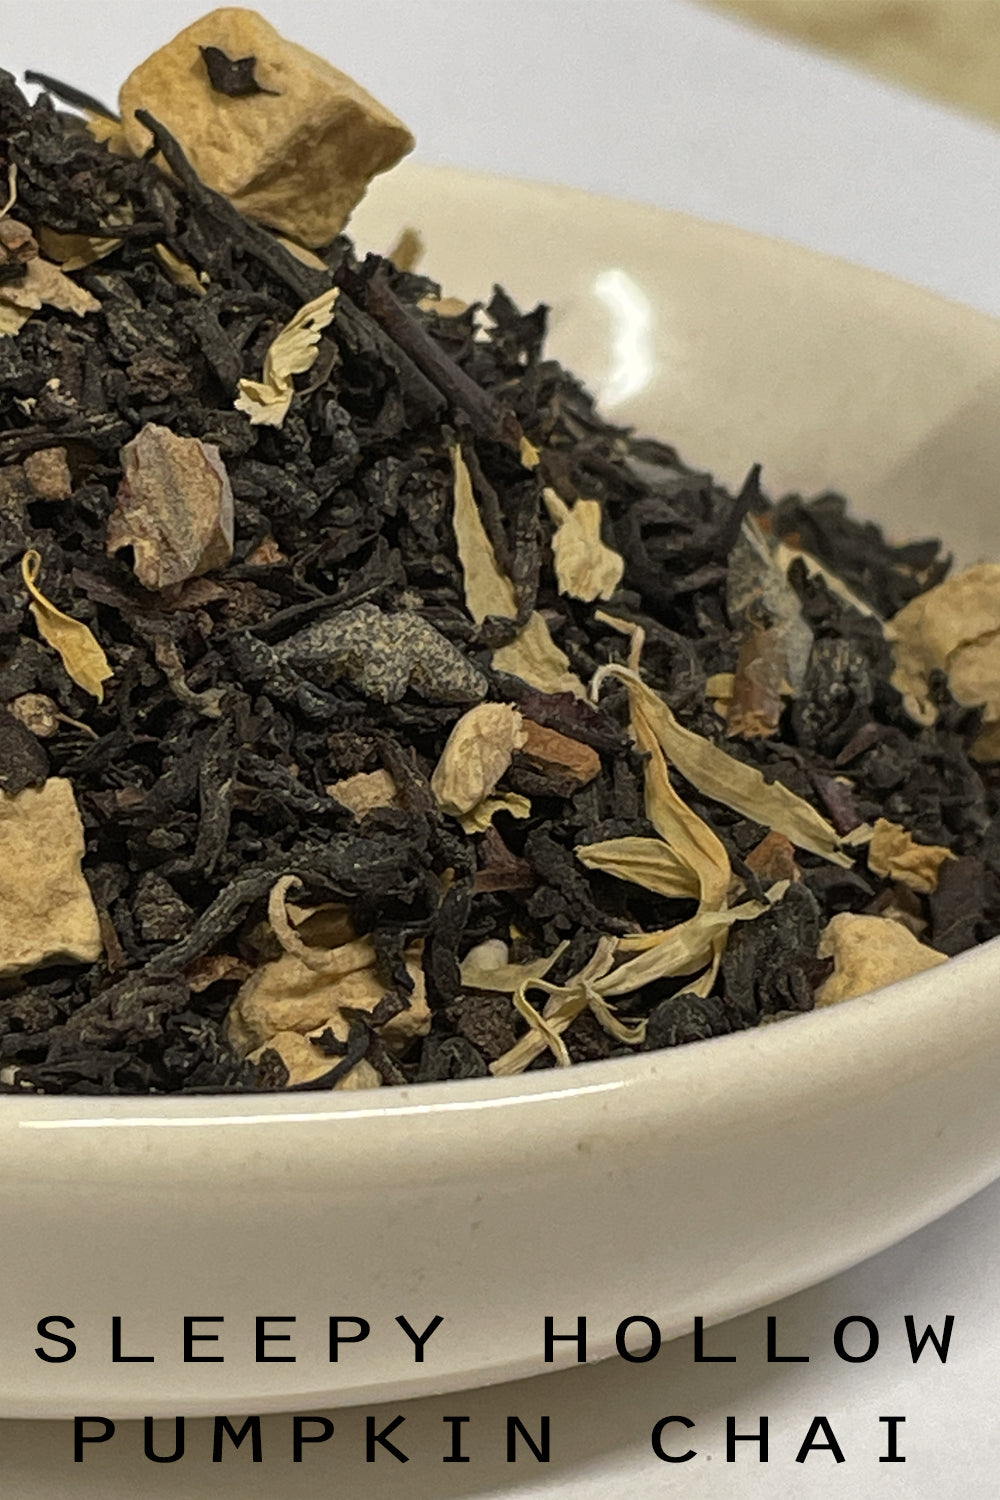 Sleepy Hollow Pumpkin Chai Tea | Holiday Tea | Fall Flavored Tea | Spiced Black Tea | Tea Gift | Loose Leaf Tea